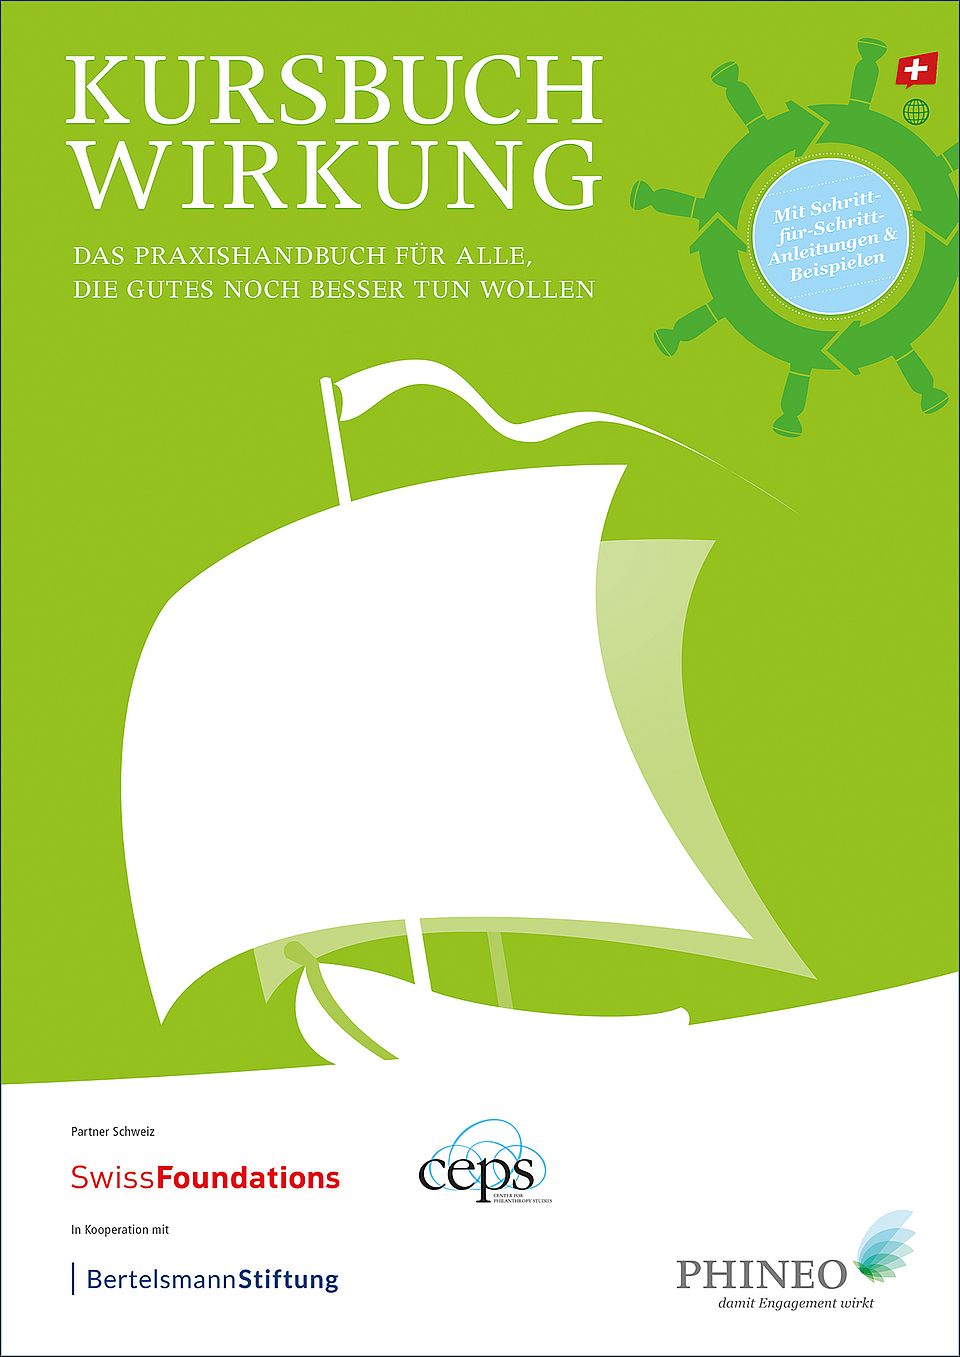 Titelbild Kursbuch Wirkung: weisses Schiff auf grünem Hintergrund